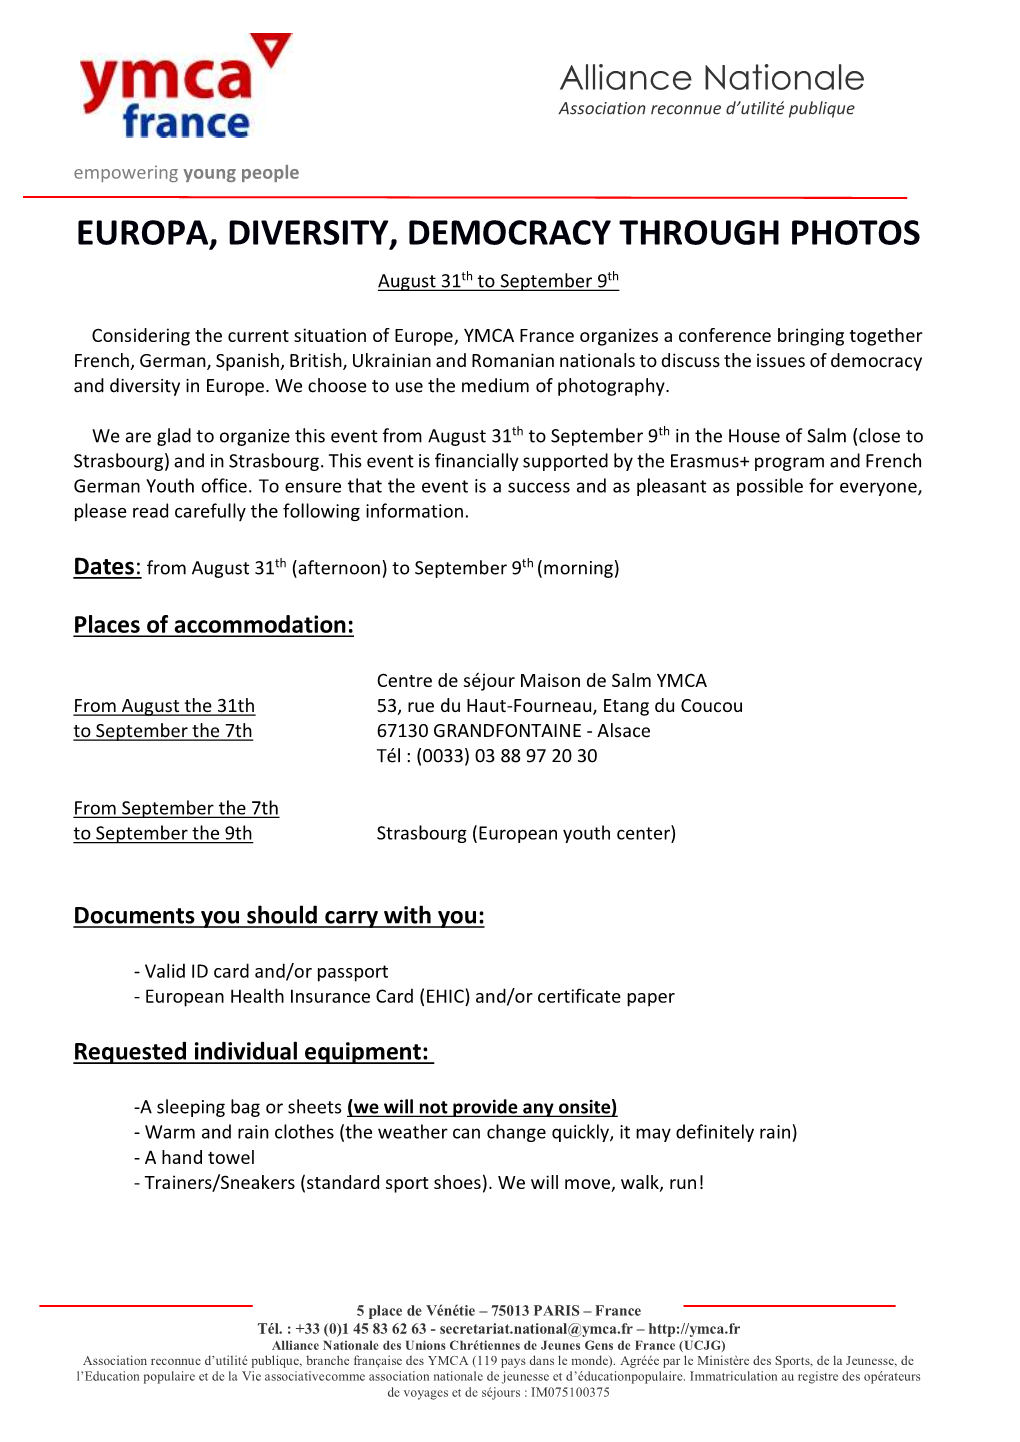 Europa, Diversity, Democracy Through Photos